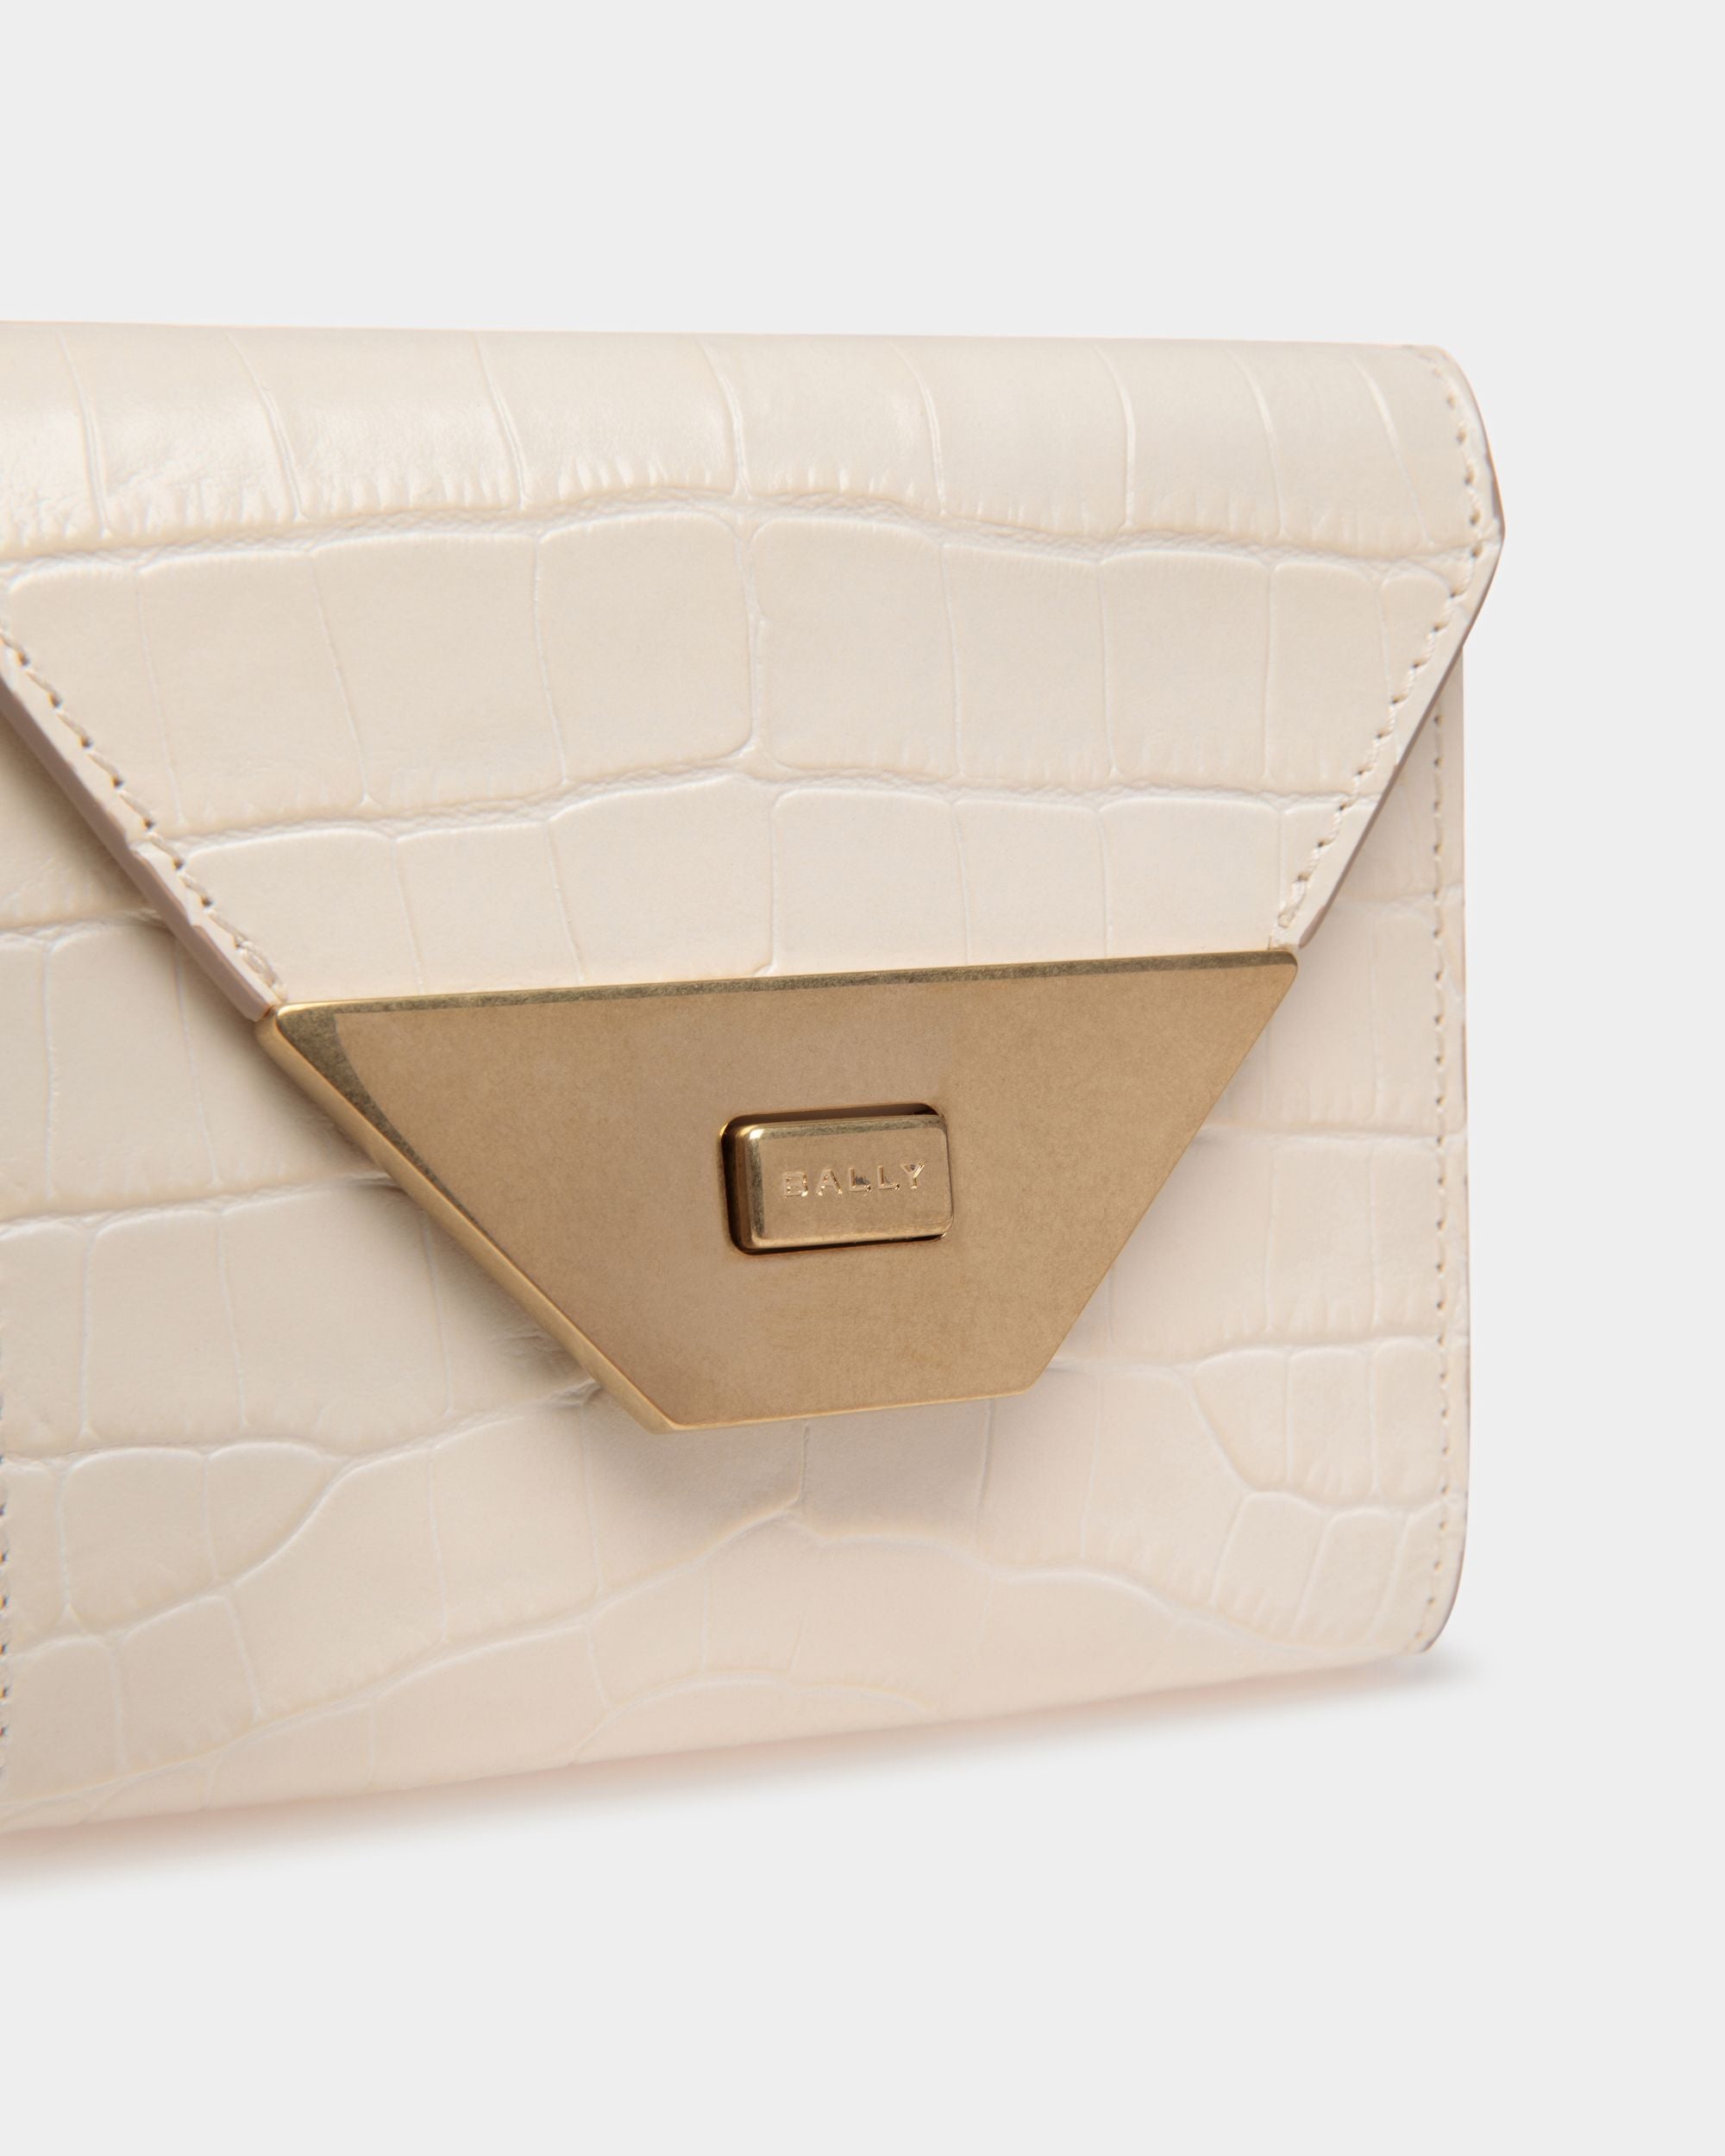 Tilt | Women's Wallet in White Crocodile Print Leather | Bally | Still Life Detail